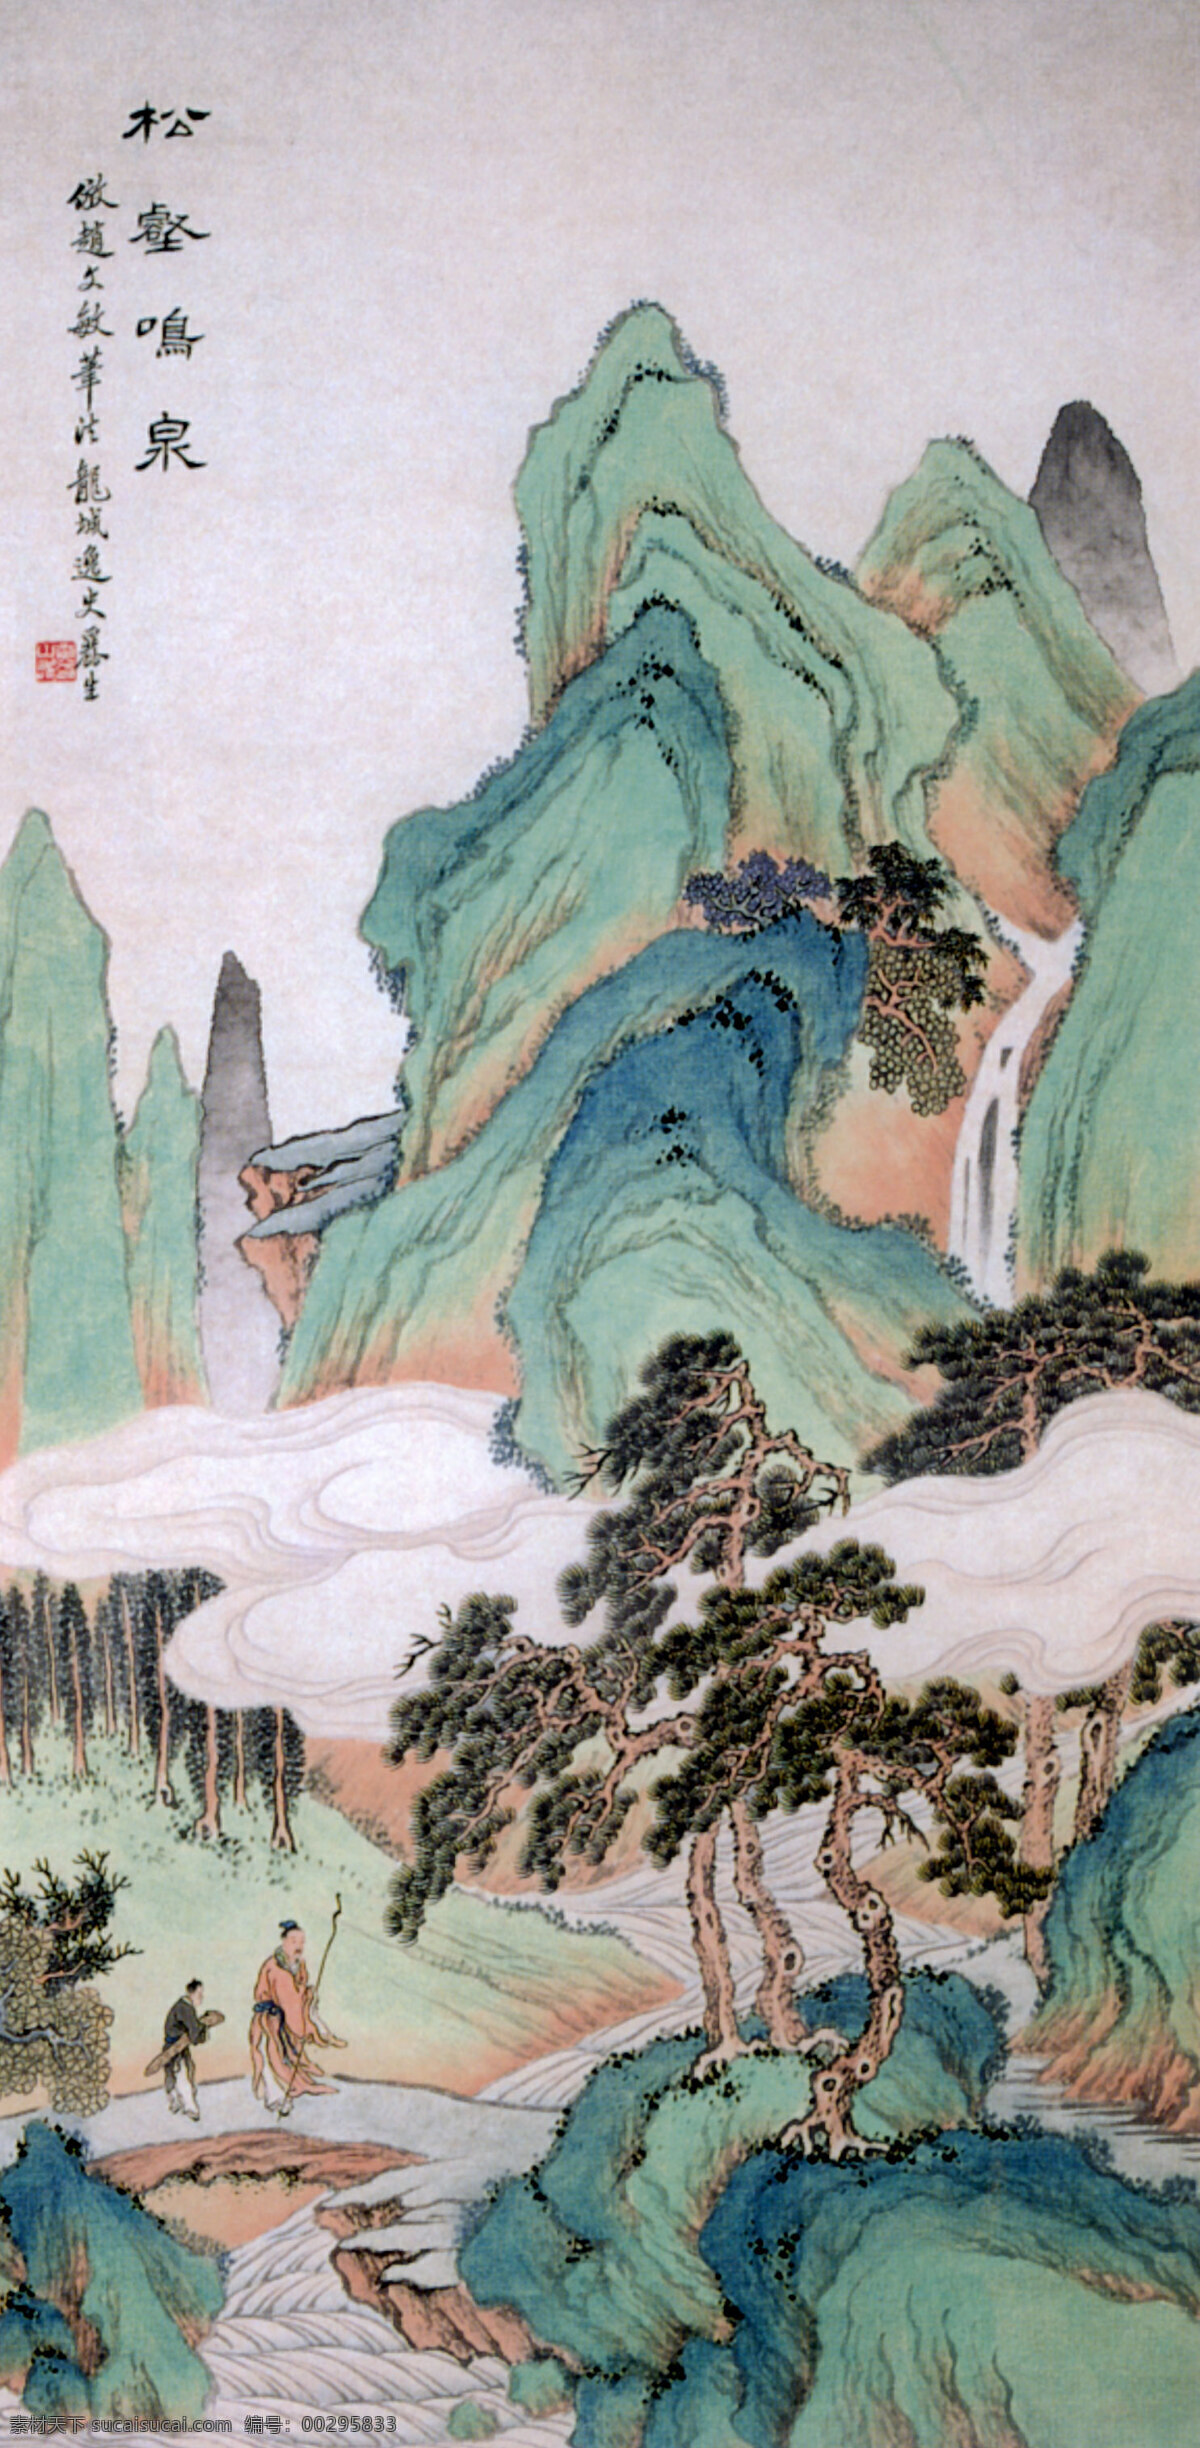 中国传世名画 名画 古画 古图 山水画 文化艺术 传统文化 设计图库